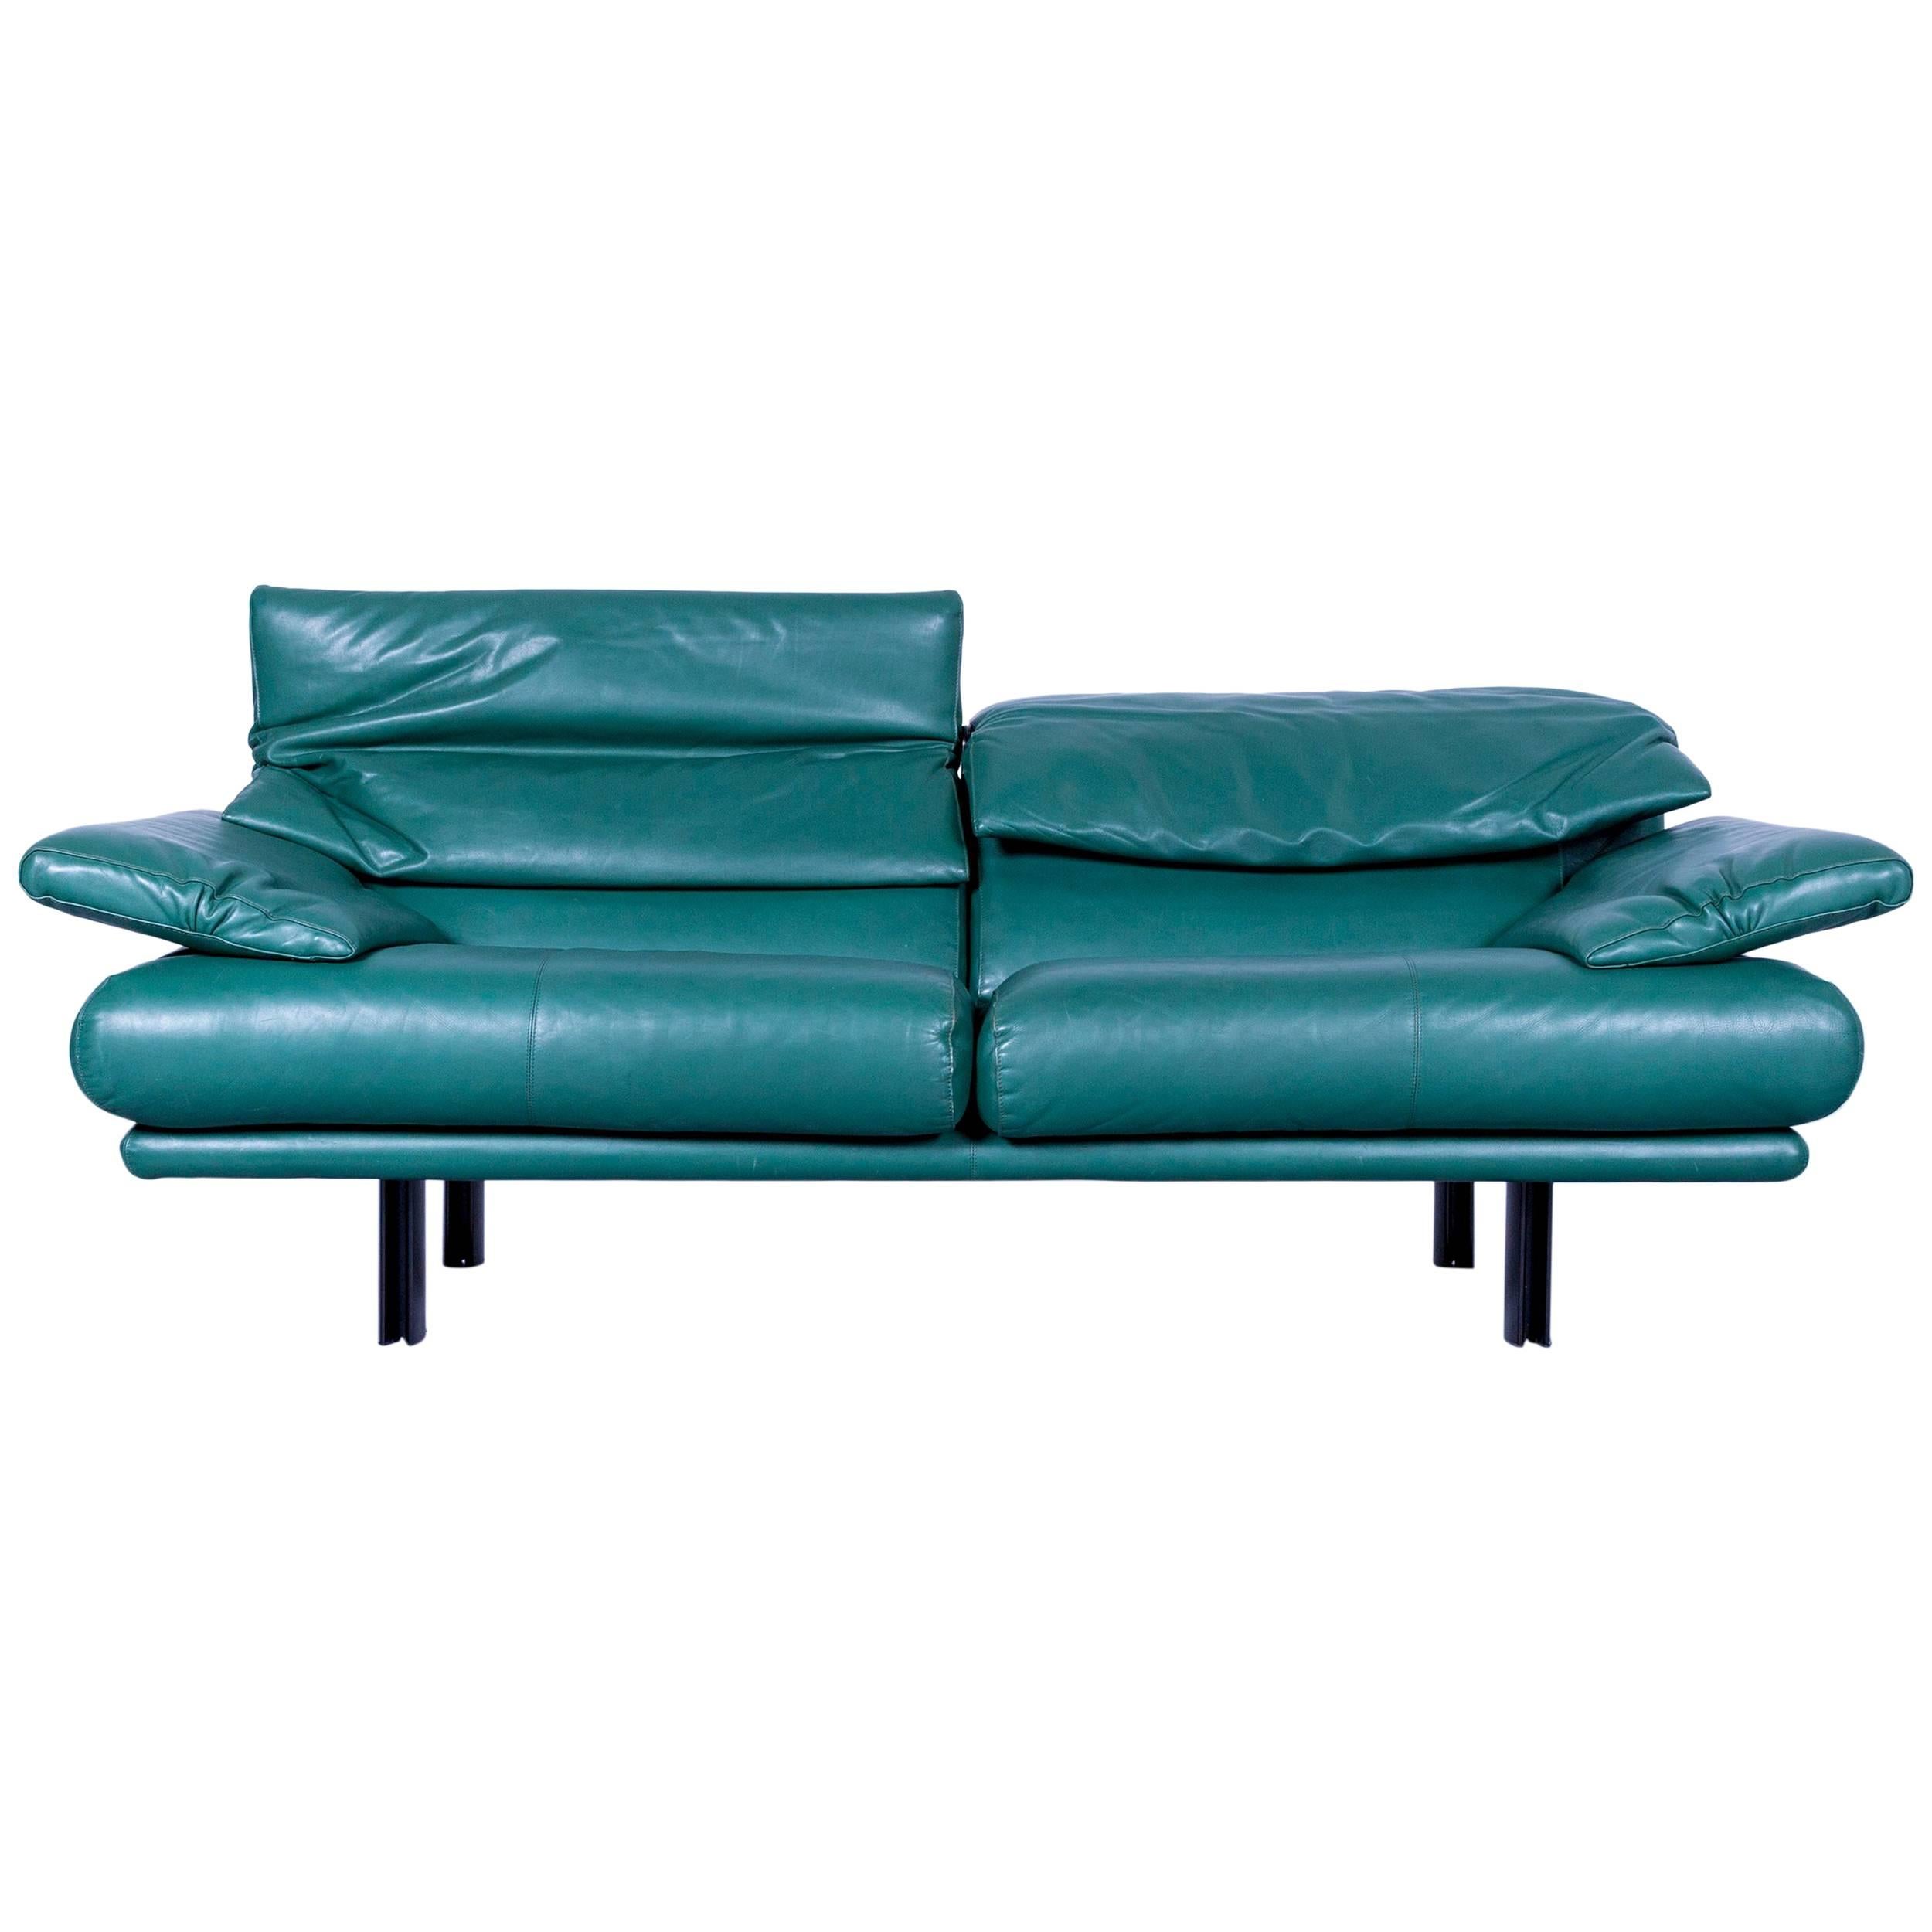 B&B Italia Alanda Leather Sofa Turqoise Blue Two-Seat